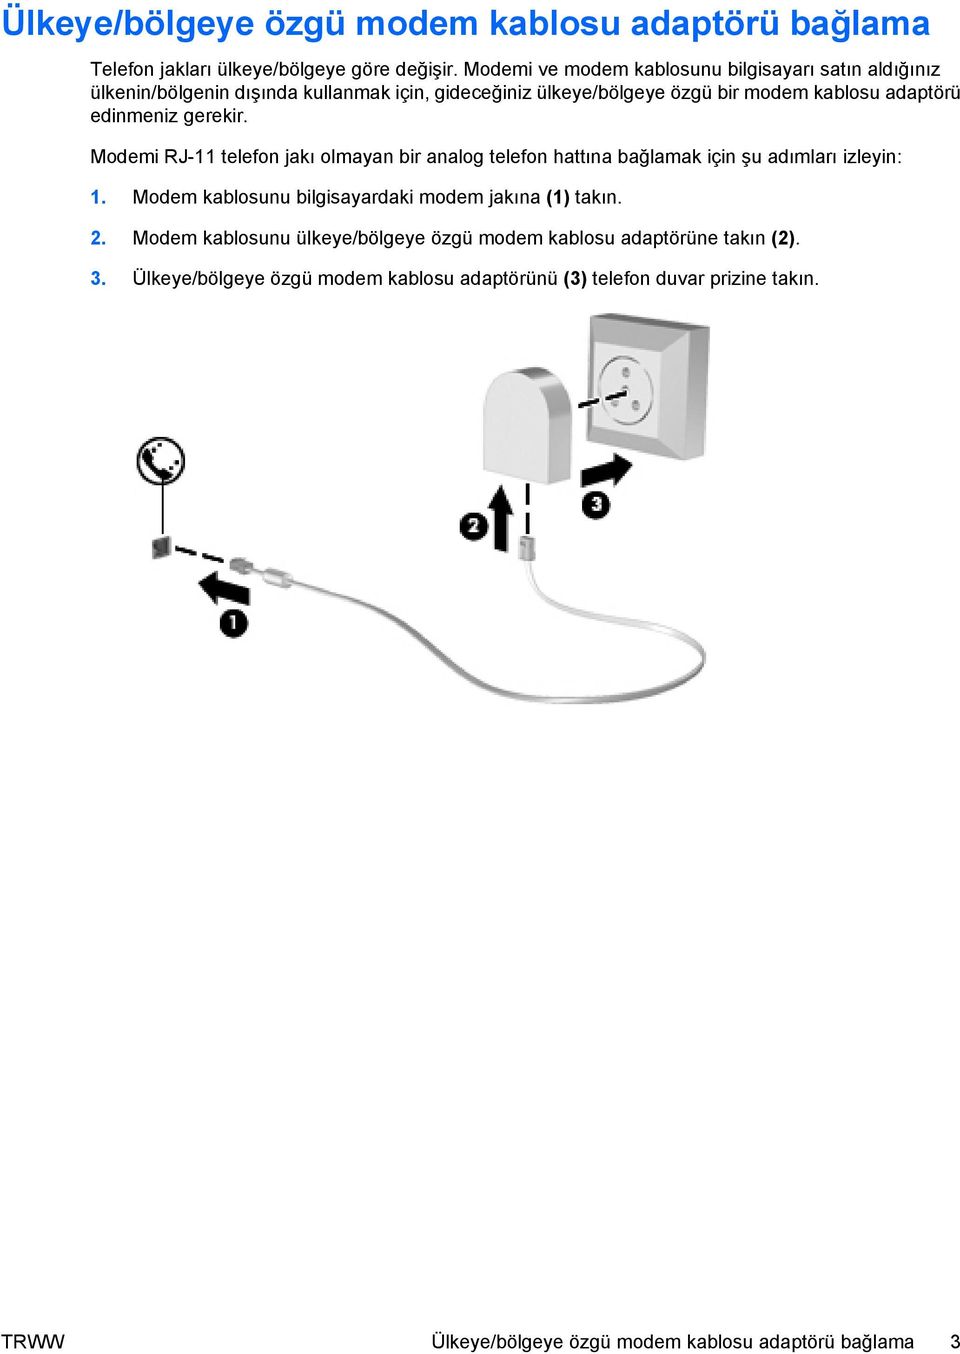 edinmeniz gerekir. Modemi RJ-11 telefon jakı olmayan bir analog telefon hattına bağlamak için şu adımları izleyin: 1.